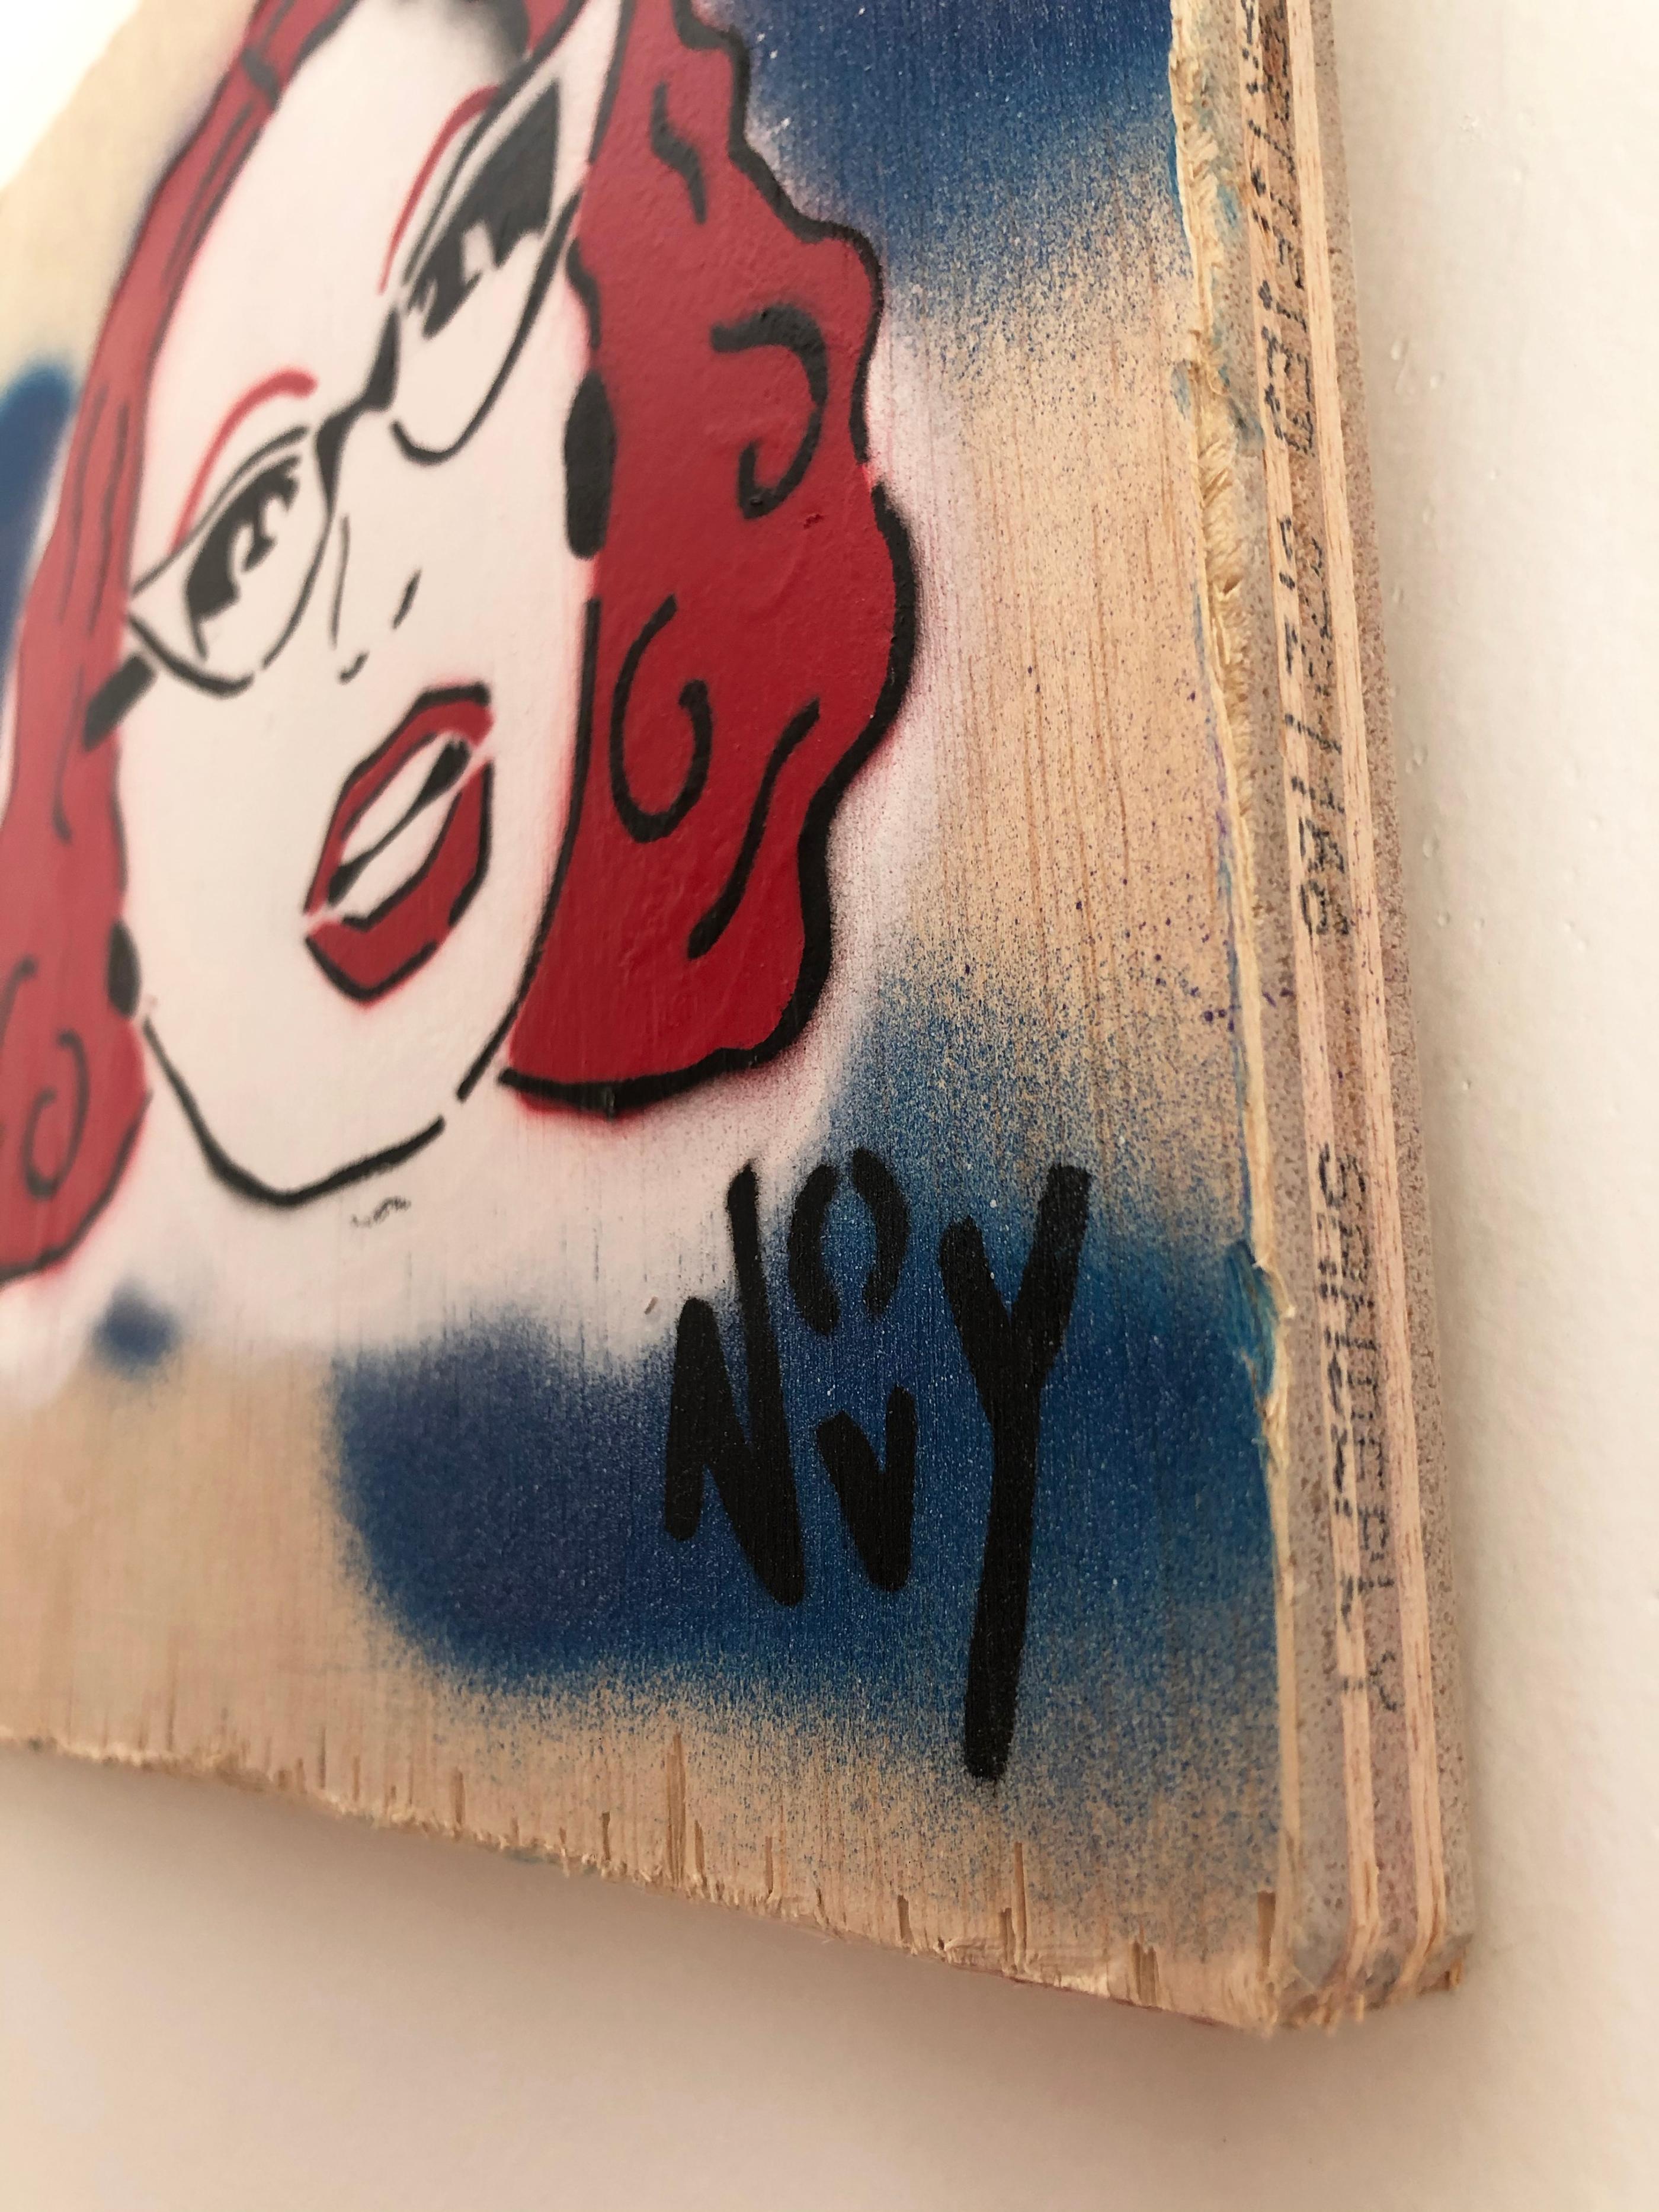 
L'art de rue de Jeremy Novy, unique en son genre, est riche en réflexions sociales. Novy a combattu le manque de représentation homophobe en célébrant l'iconographie gay, apportant jovialité et chaleur aux espaces urbains désaffectés.

Depuis qu'il